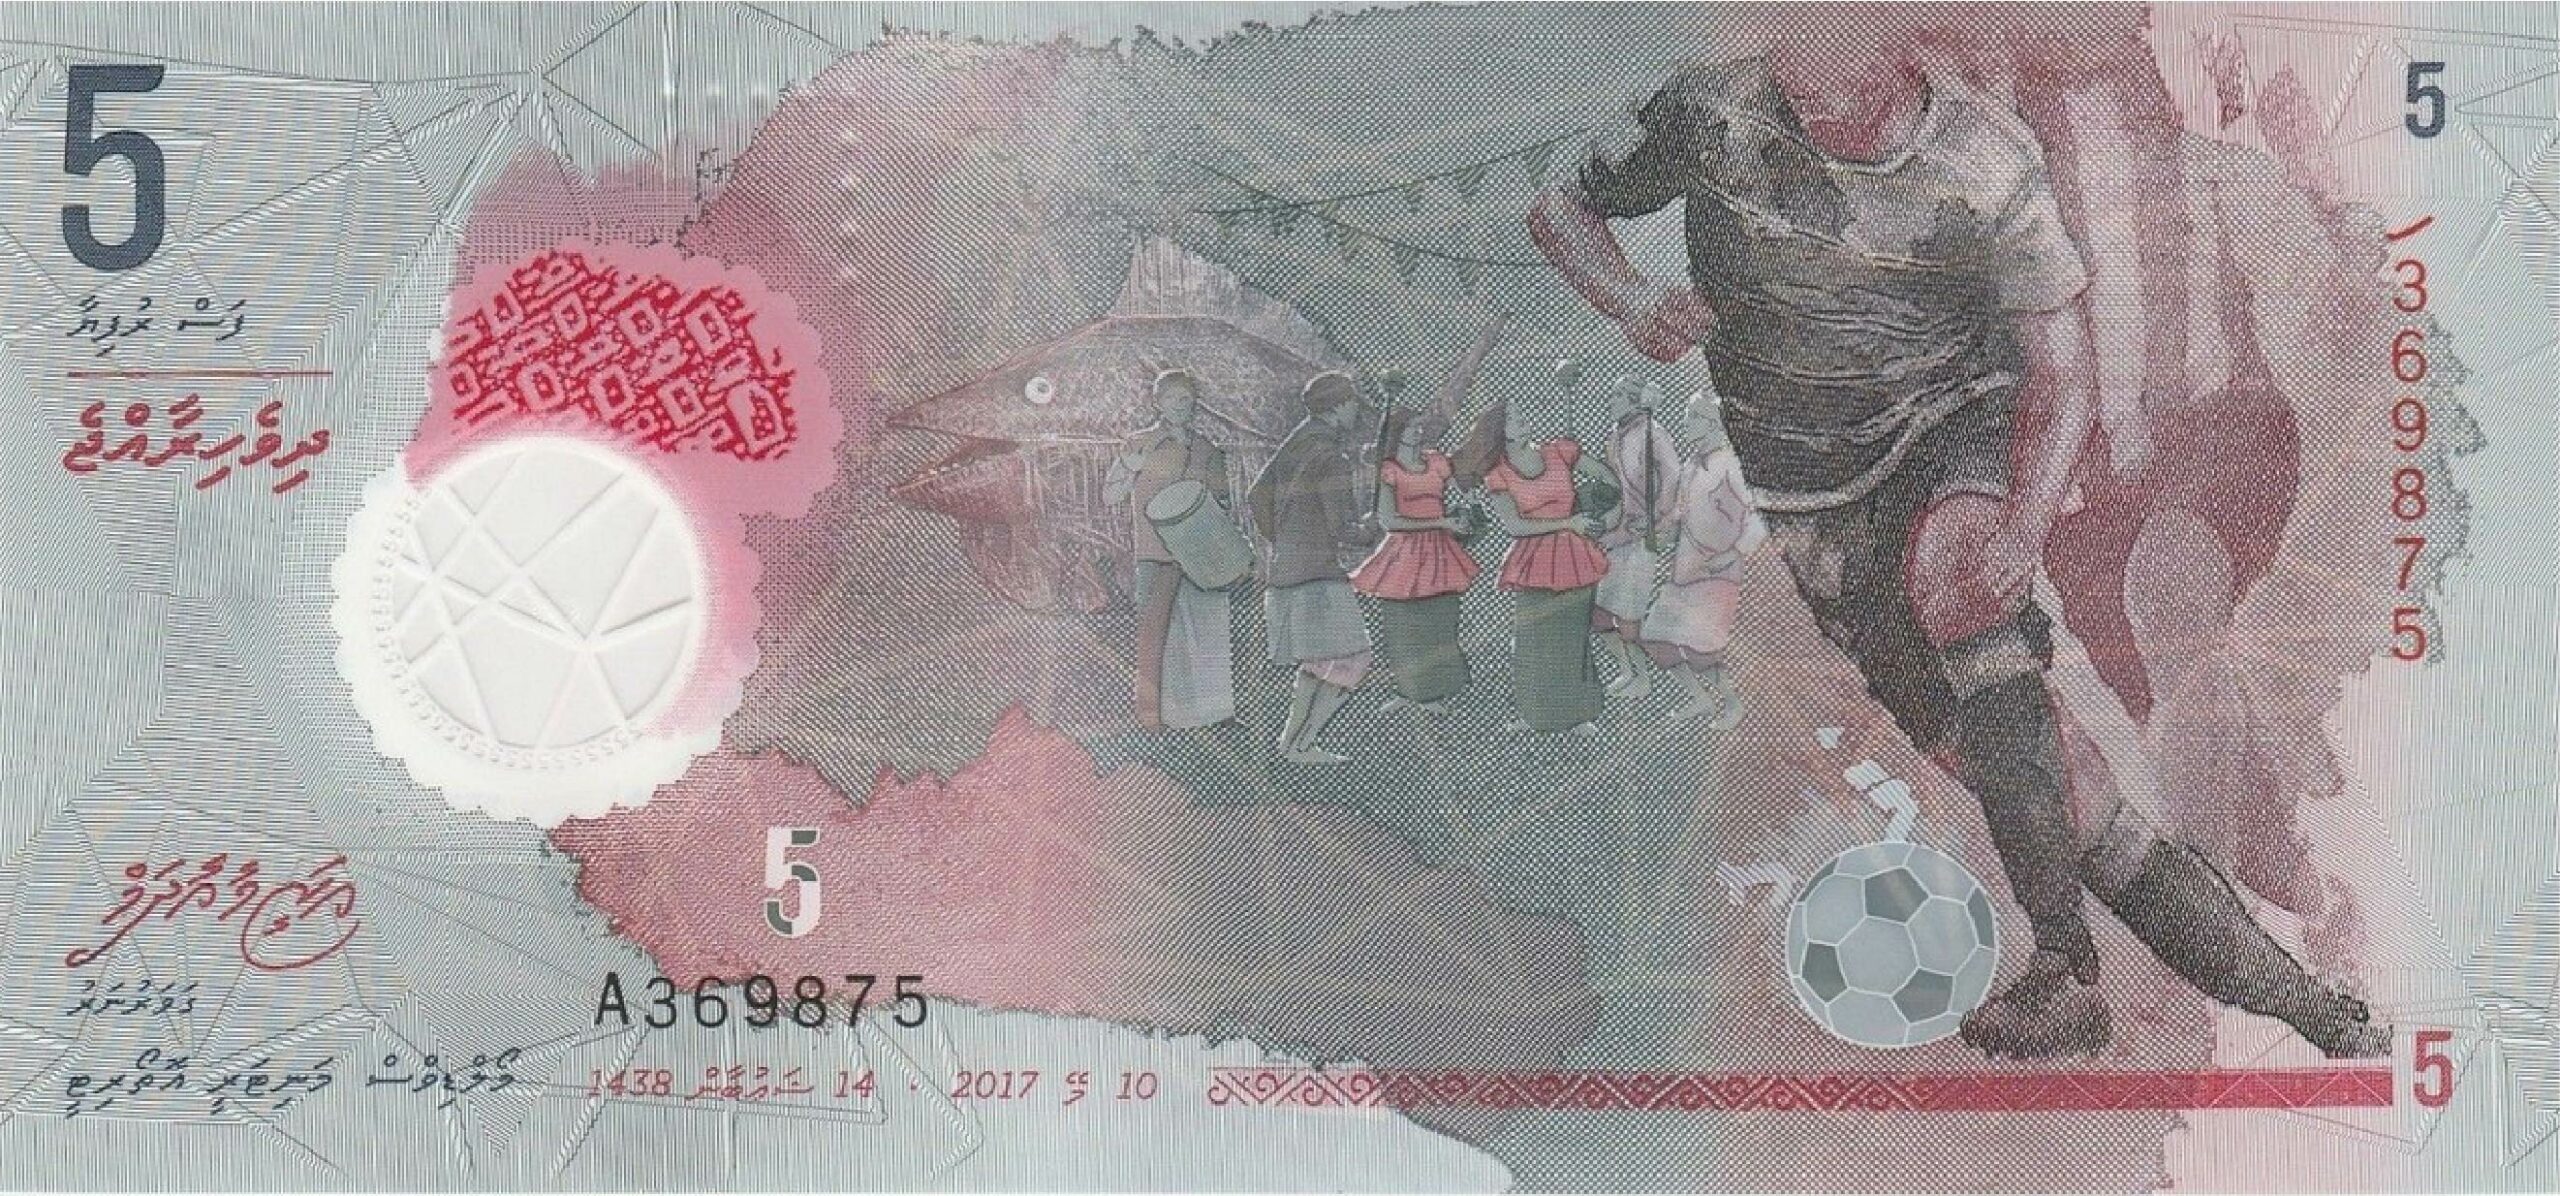 5 Maldivian Rufiyaa banknote